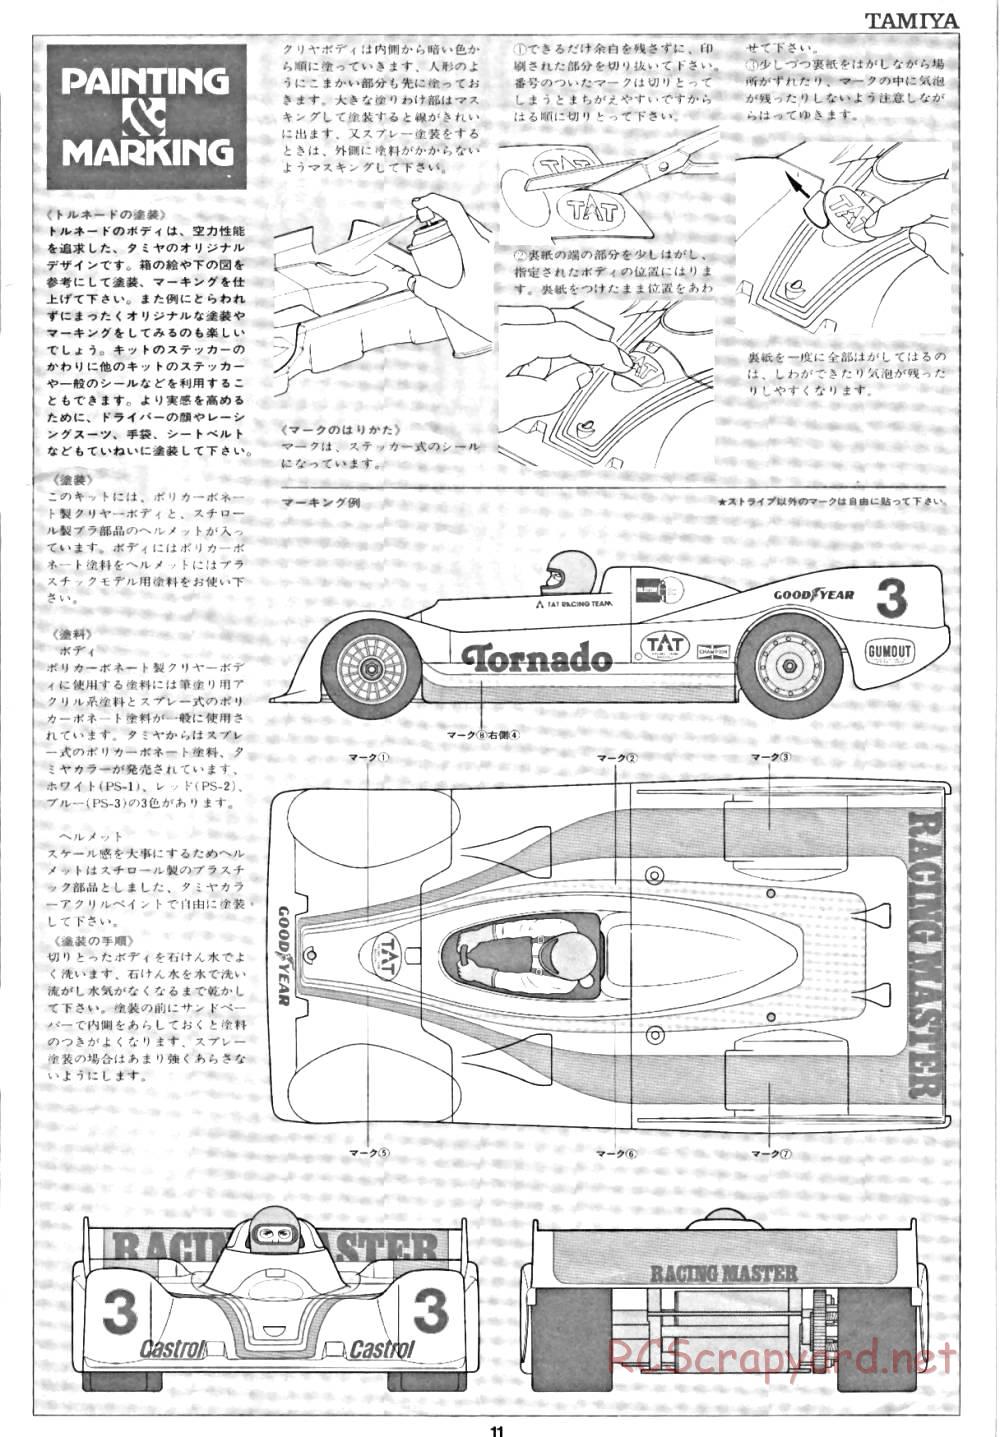 Tamiya - Tornado - RM MK.3 - 58032 - Manual - Page 11